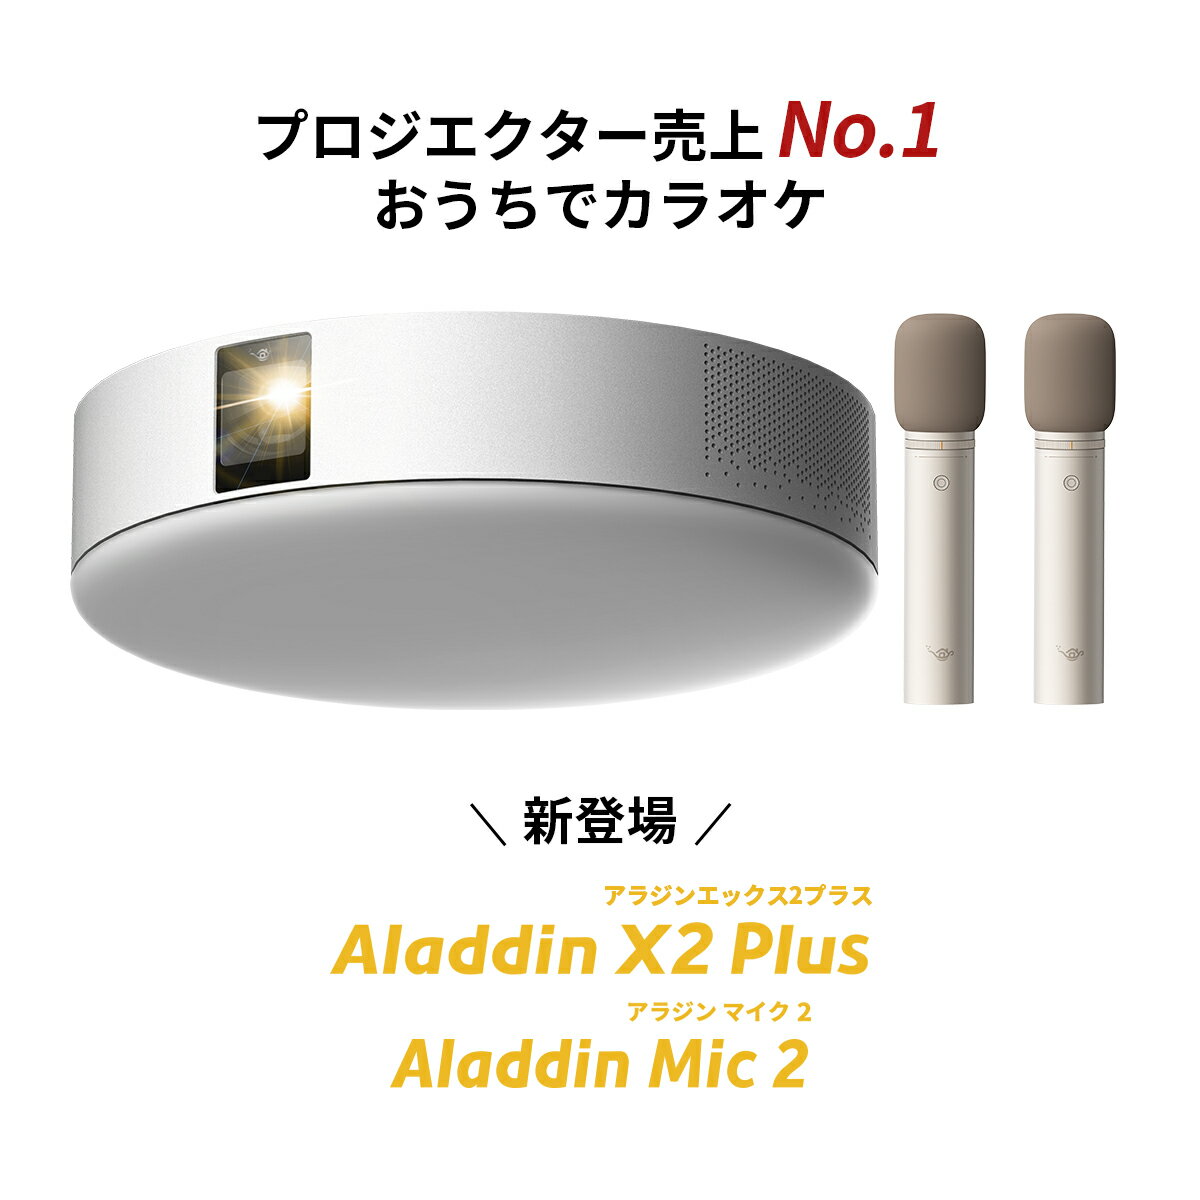 Aladdin X2 Plus Aladdin Mic2 Set （ポップイン アラジン 2 プラス アラジン マイク2 セット）家庭用 カラオケマイク USB 高音質 短焦点 900 ANSIルーメン LEDシーリングライト スピーカー フルHD 天井 照明 ホームシアター